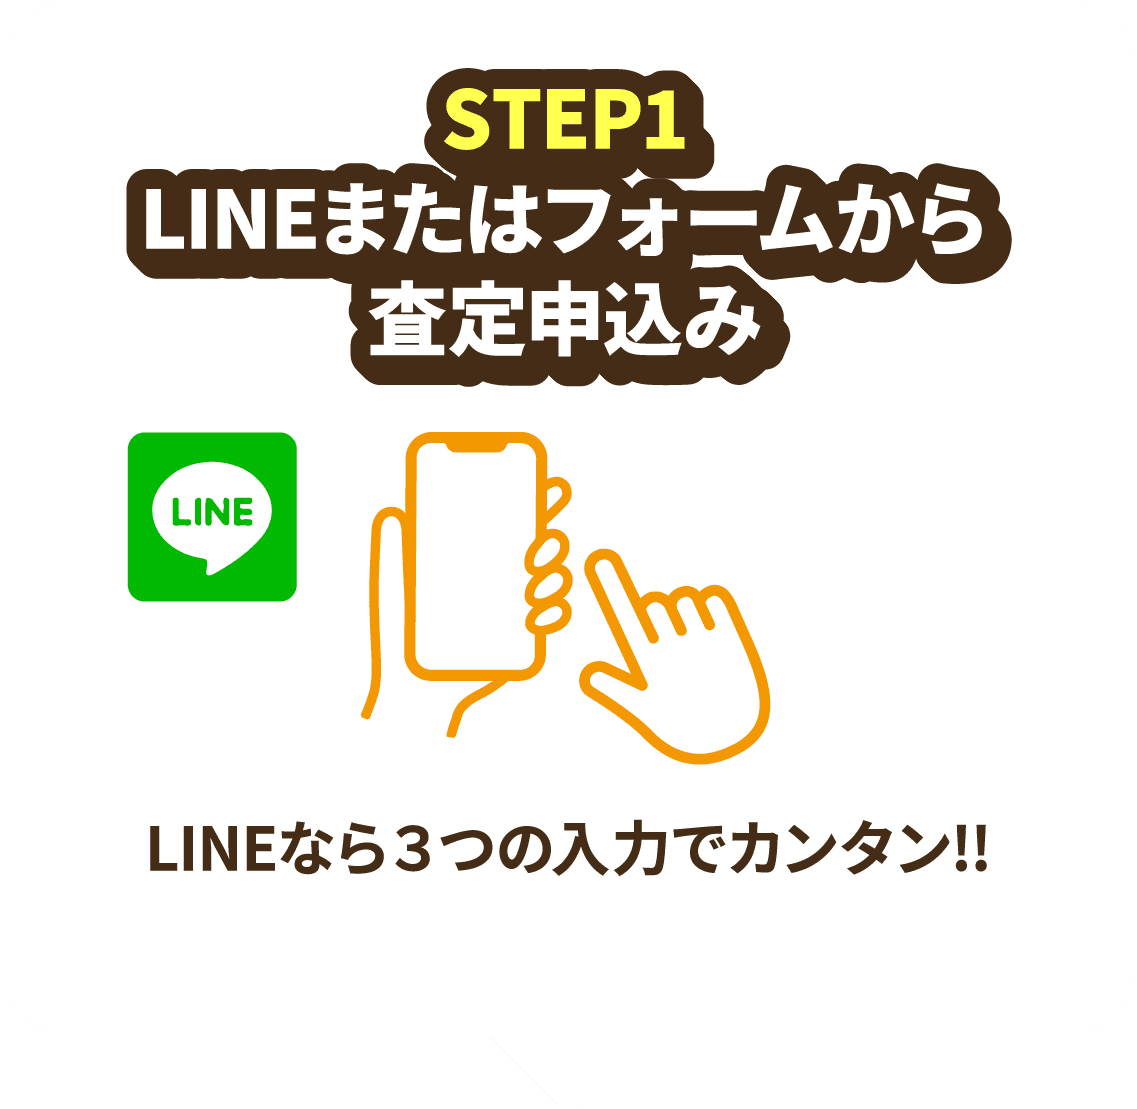 STEP1 LINEまたはフォームから査定申込み LINEなら３つの入力でカンタン!!